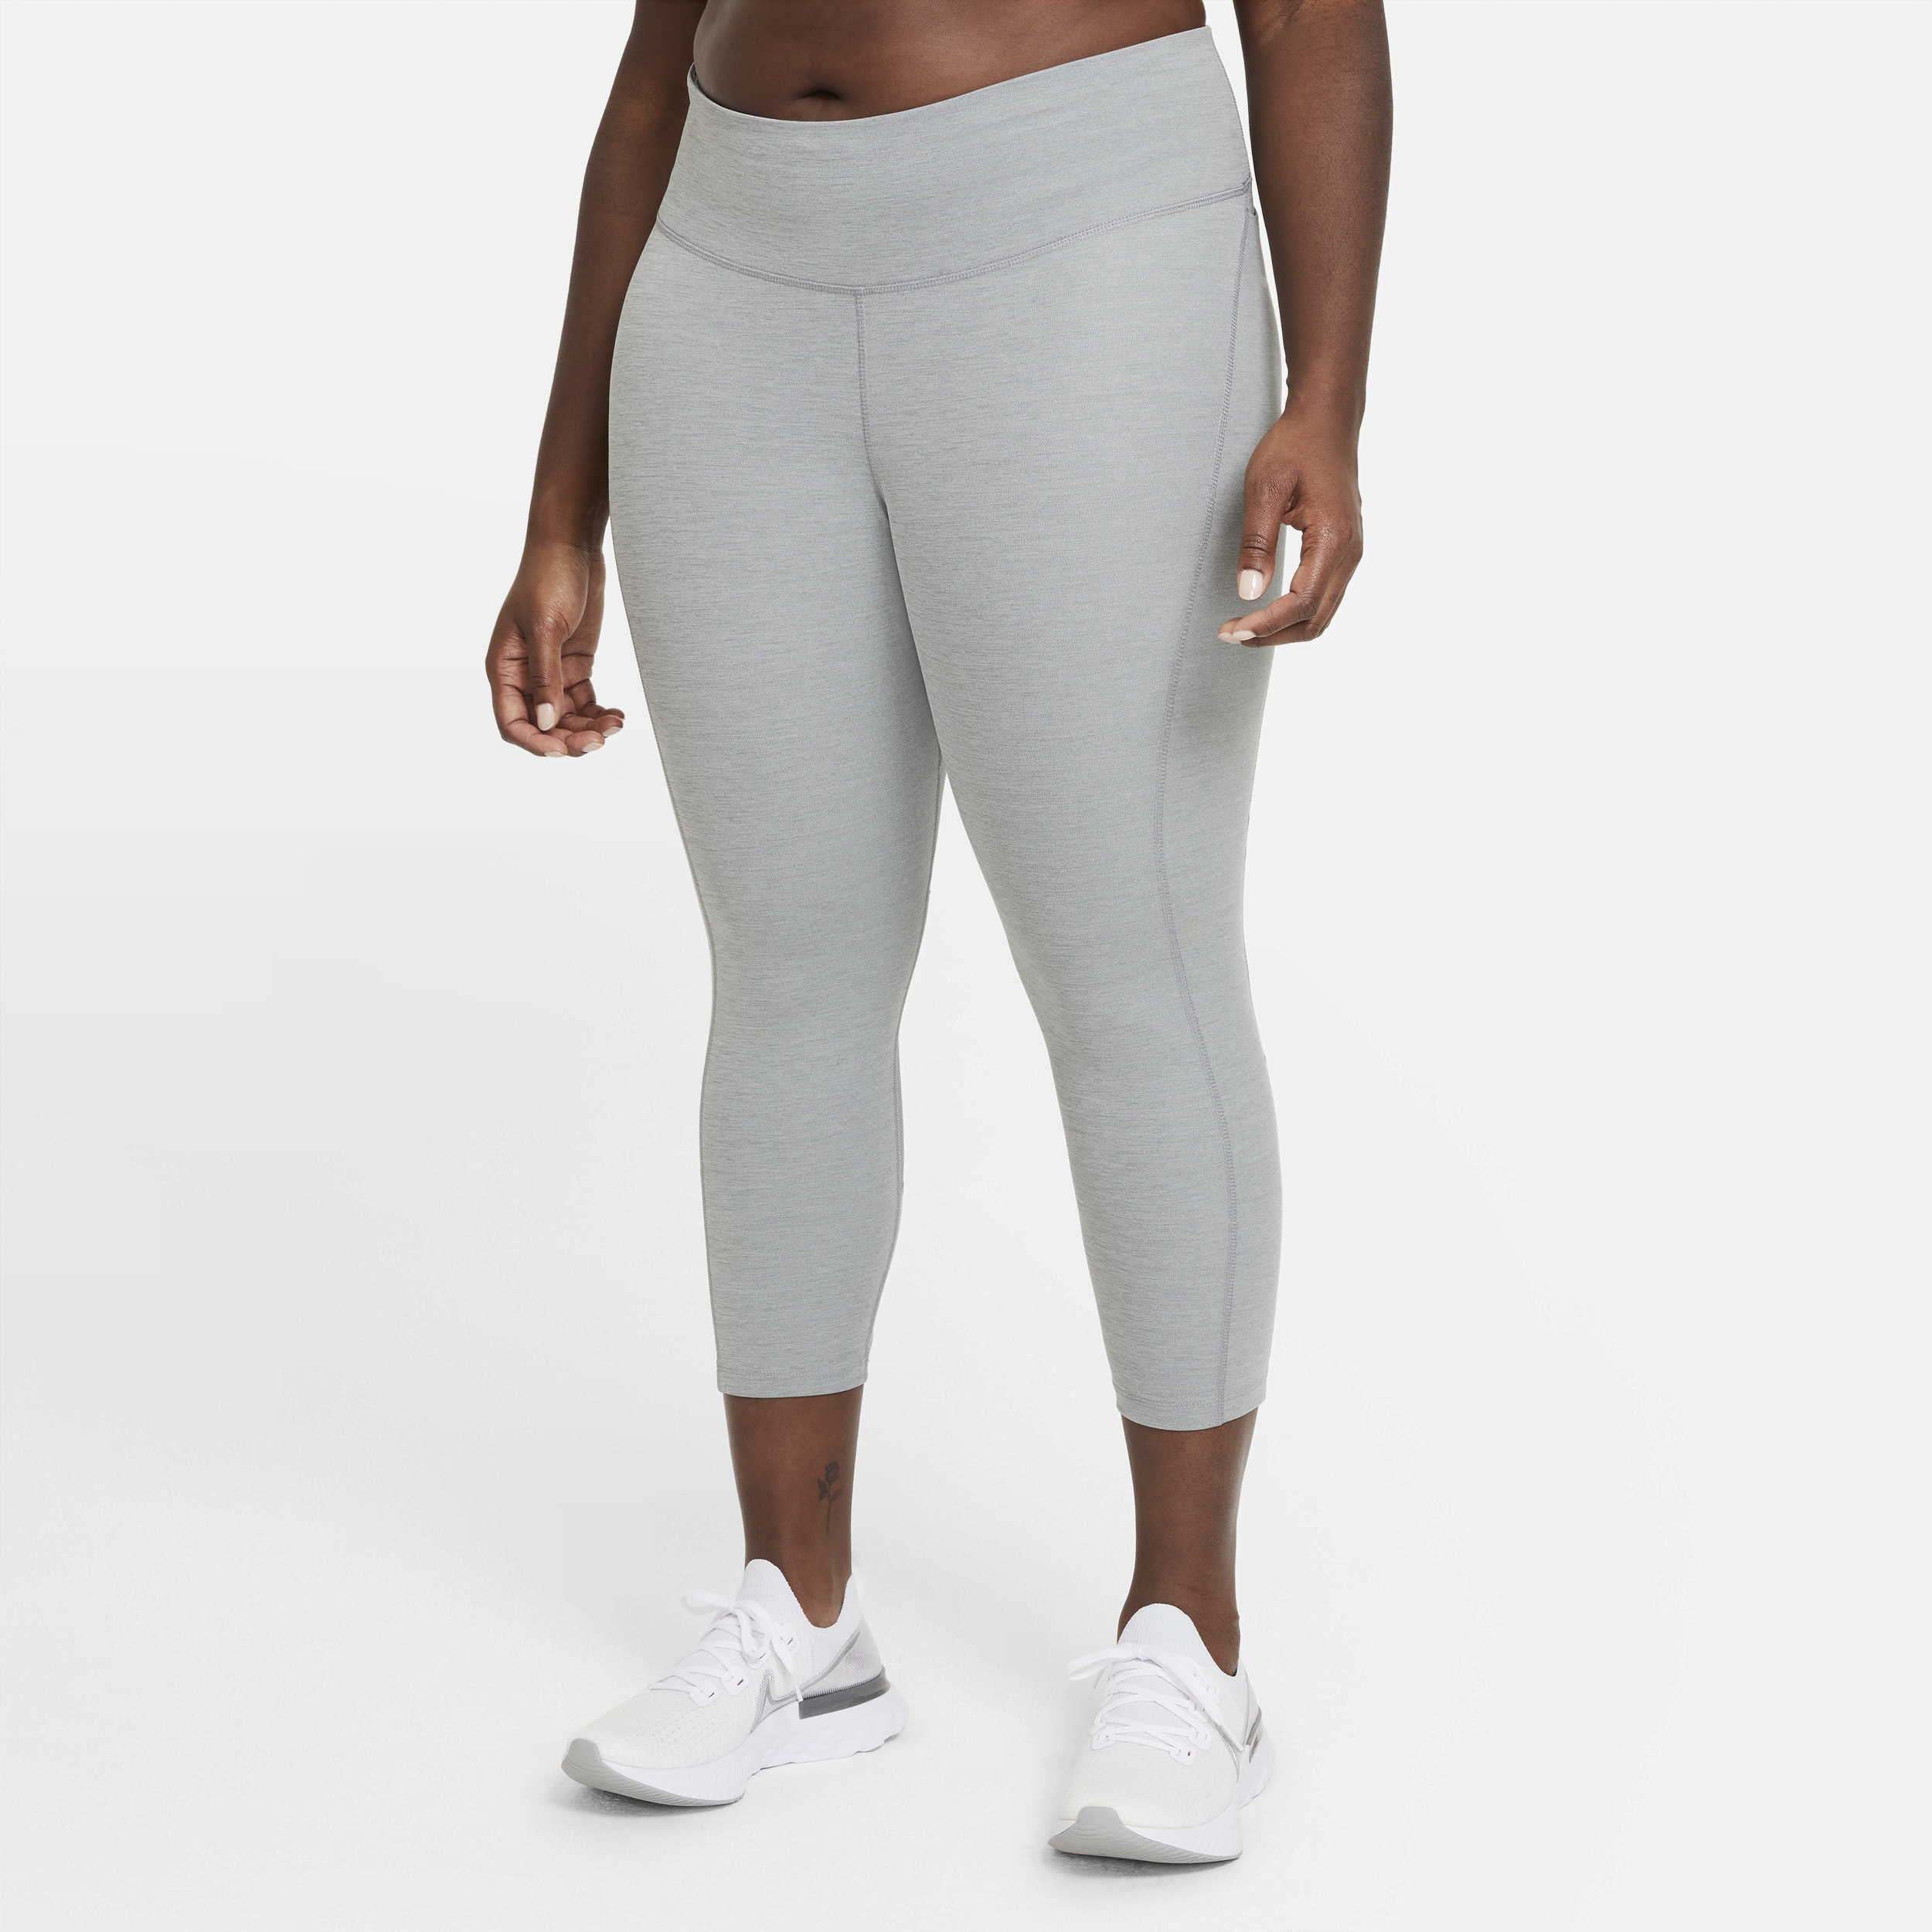 Damskie legginsy do biegania o skróconym kroju ze średnim stanem Nike Fast (duże rozmiary) - Szary